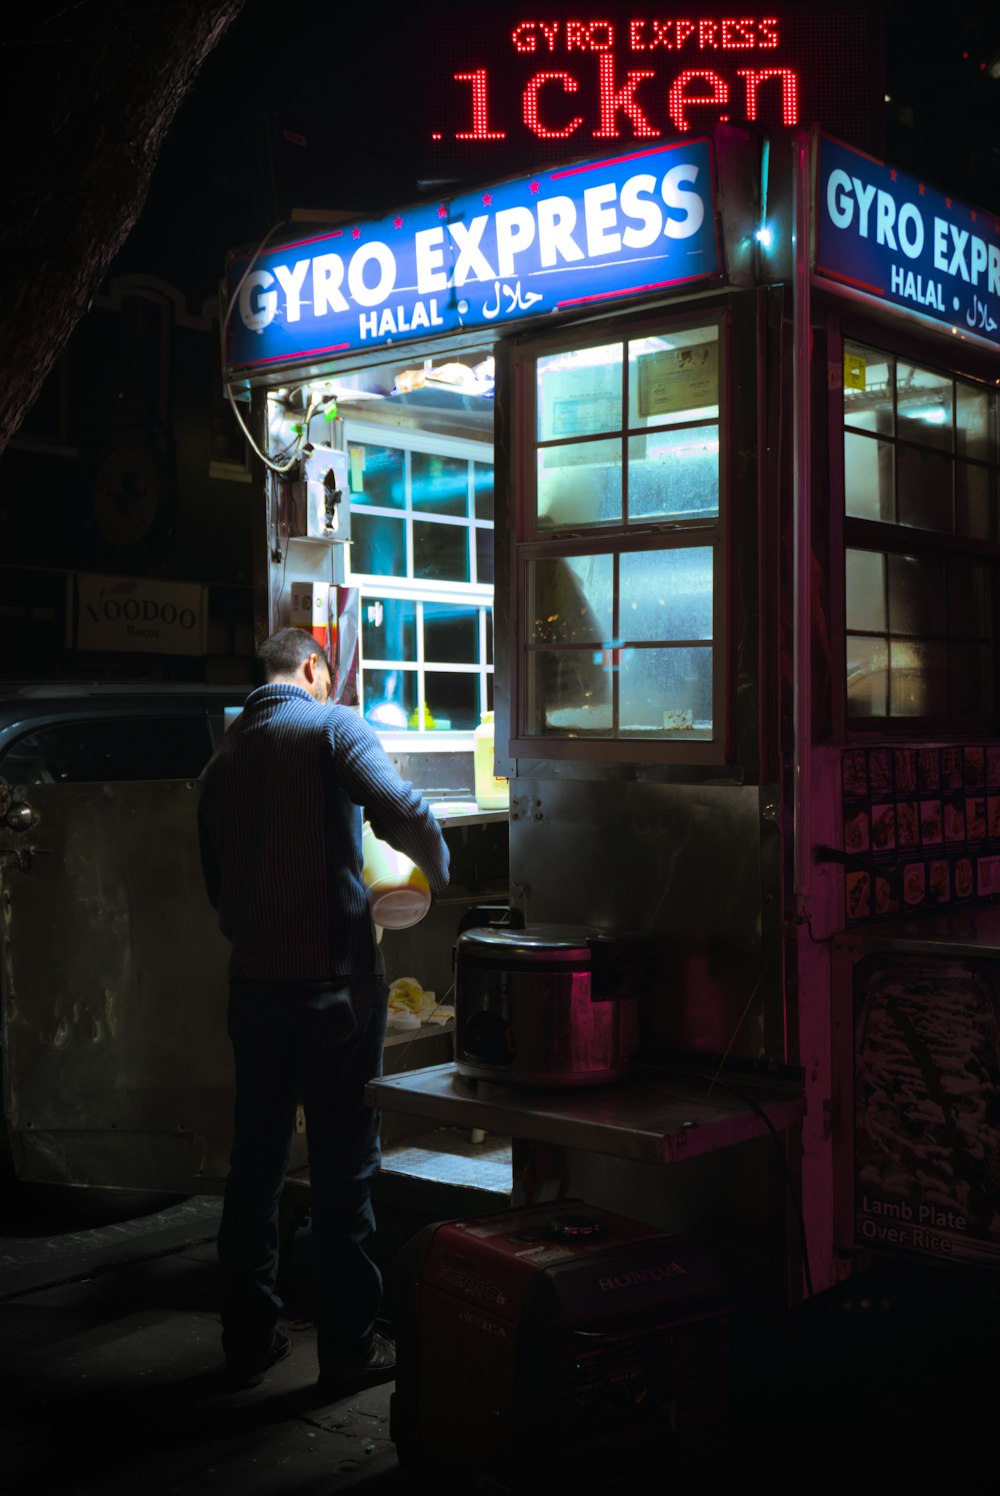 Un hombre parado frente a una tienda por la noche